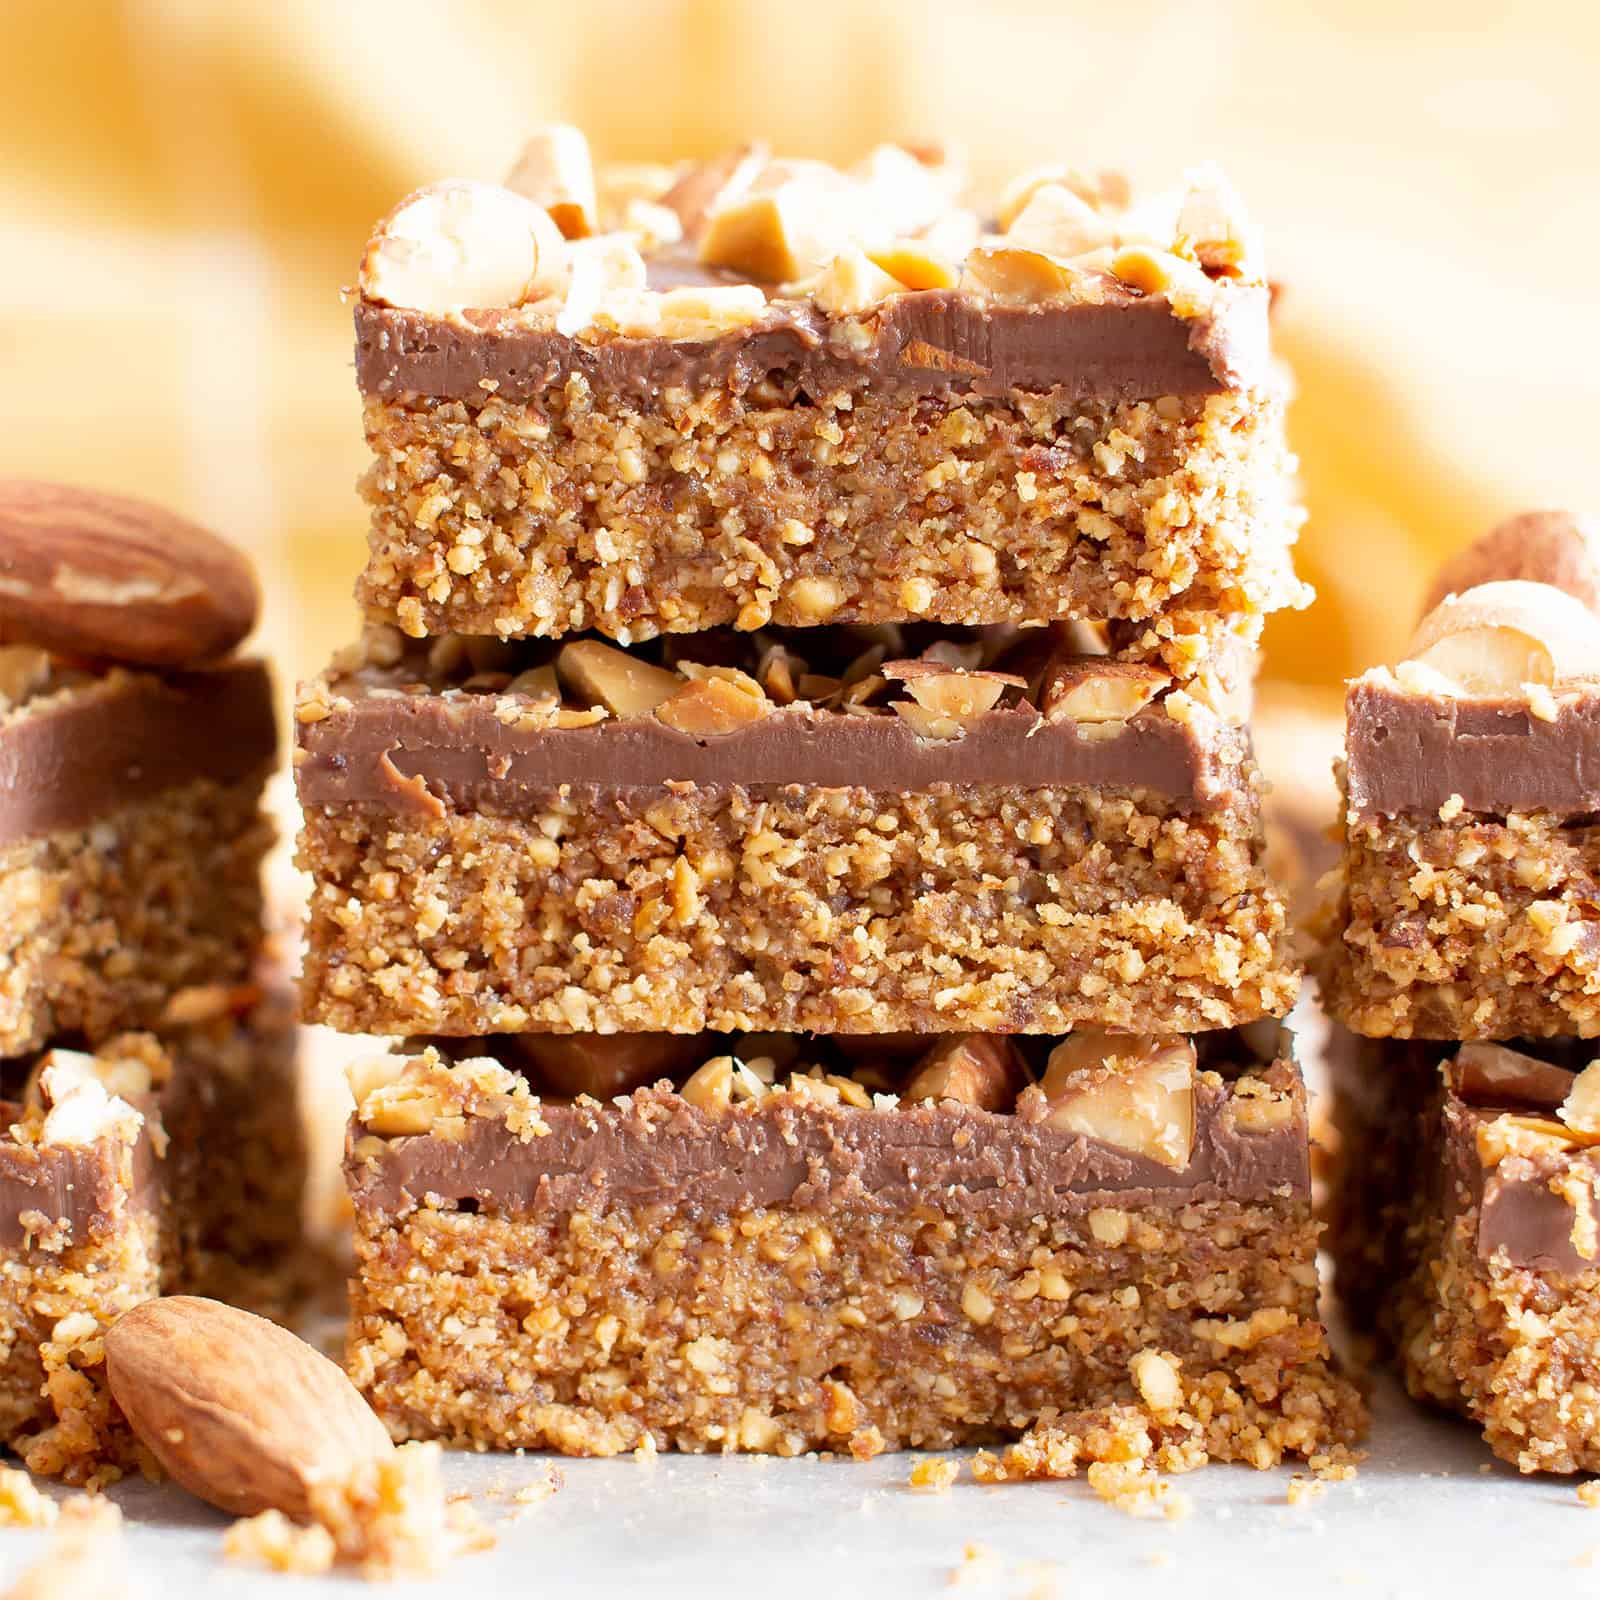 4 Ingredient No Bake Paleo Chocolate Almond Bars (Gluten Free, Vegan) – Easy No Bake Squares Recipe!